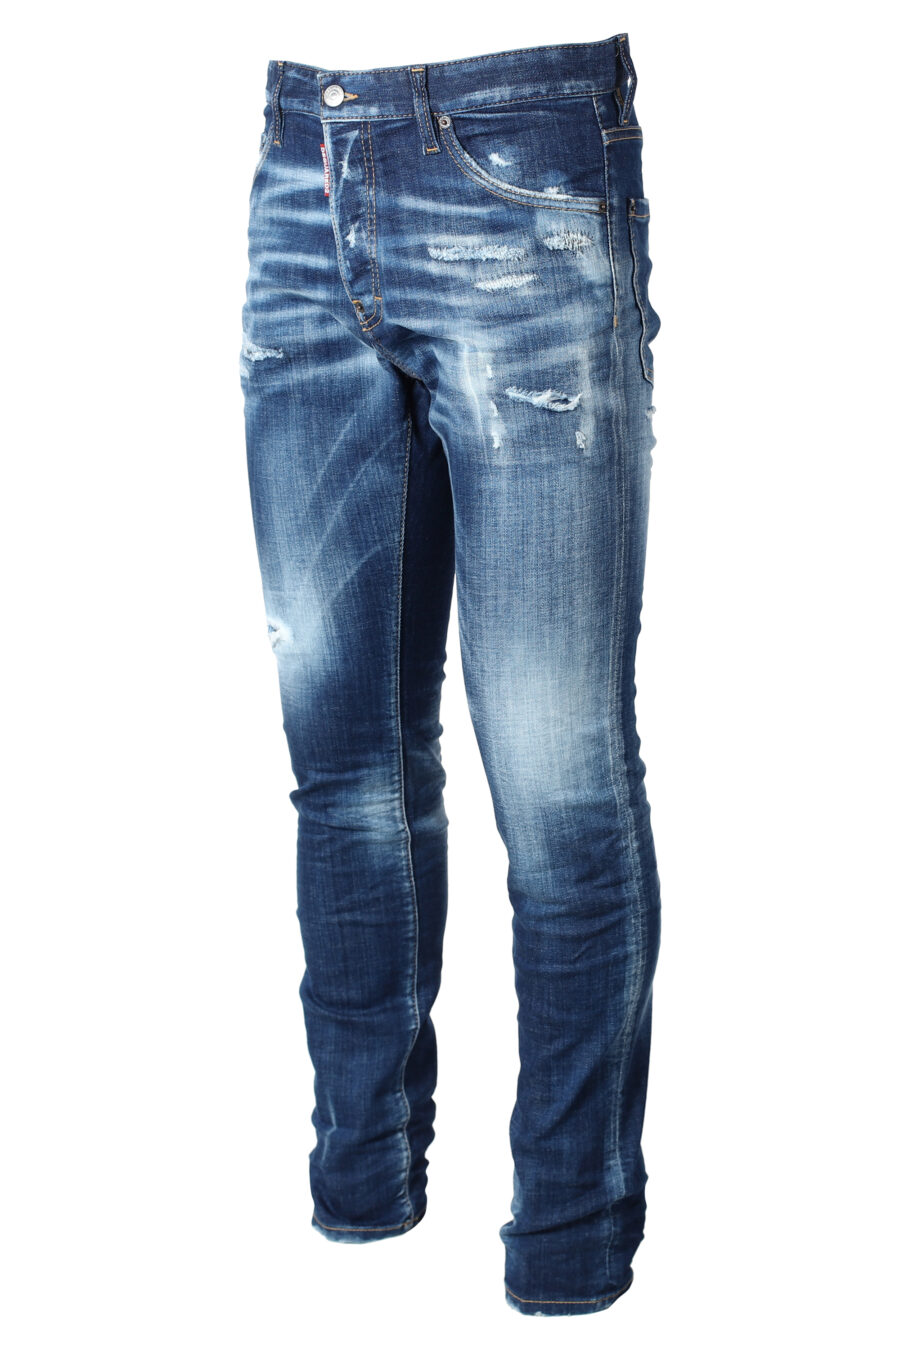 Blaue getragene Jeans "cooler Typ" - IMG 9873